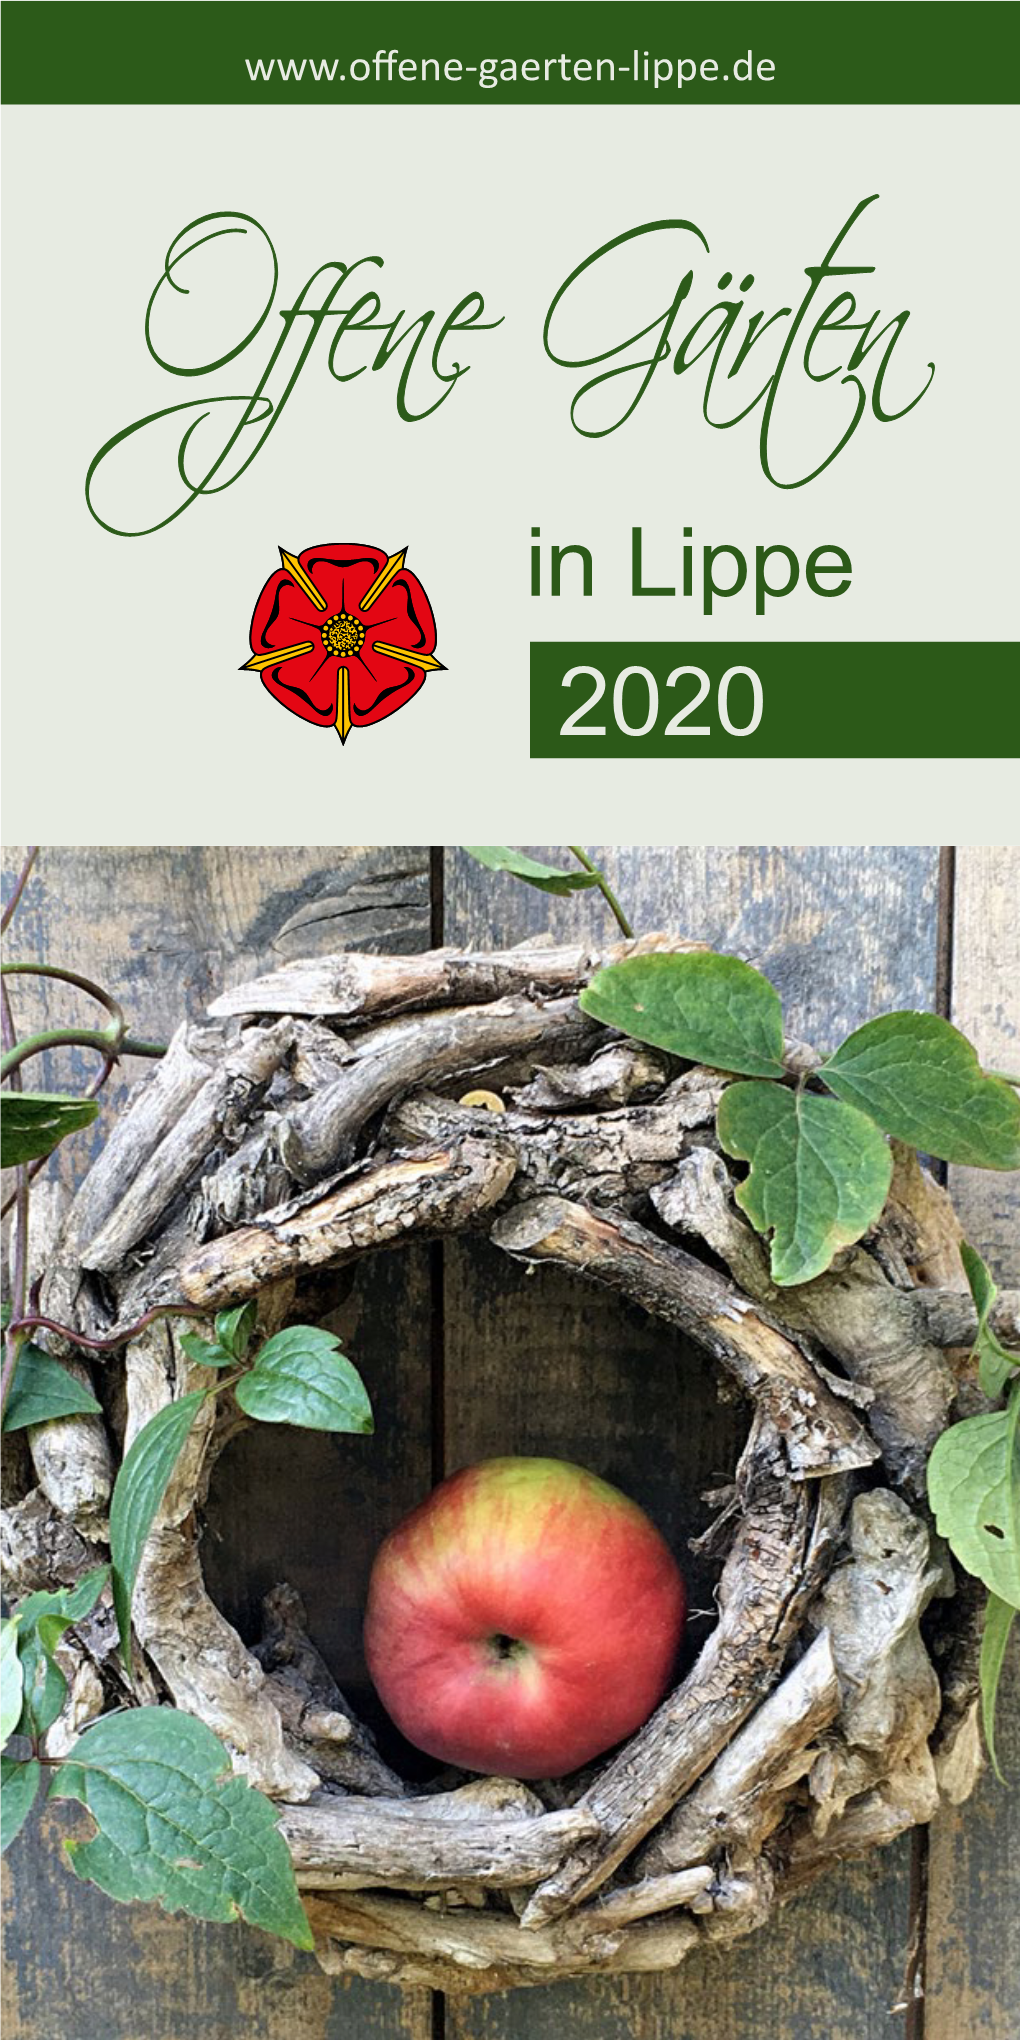 Offene Gaerten in Lippe 2020.Pdf